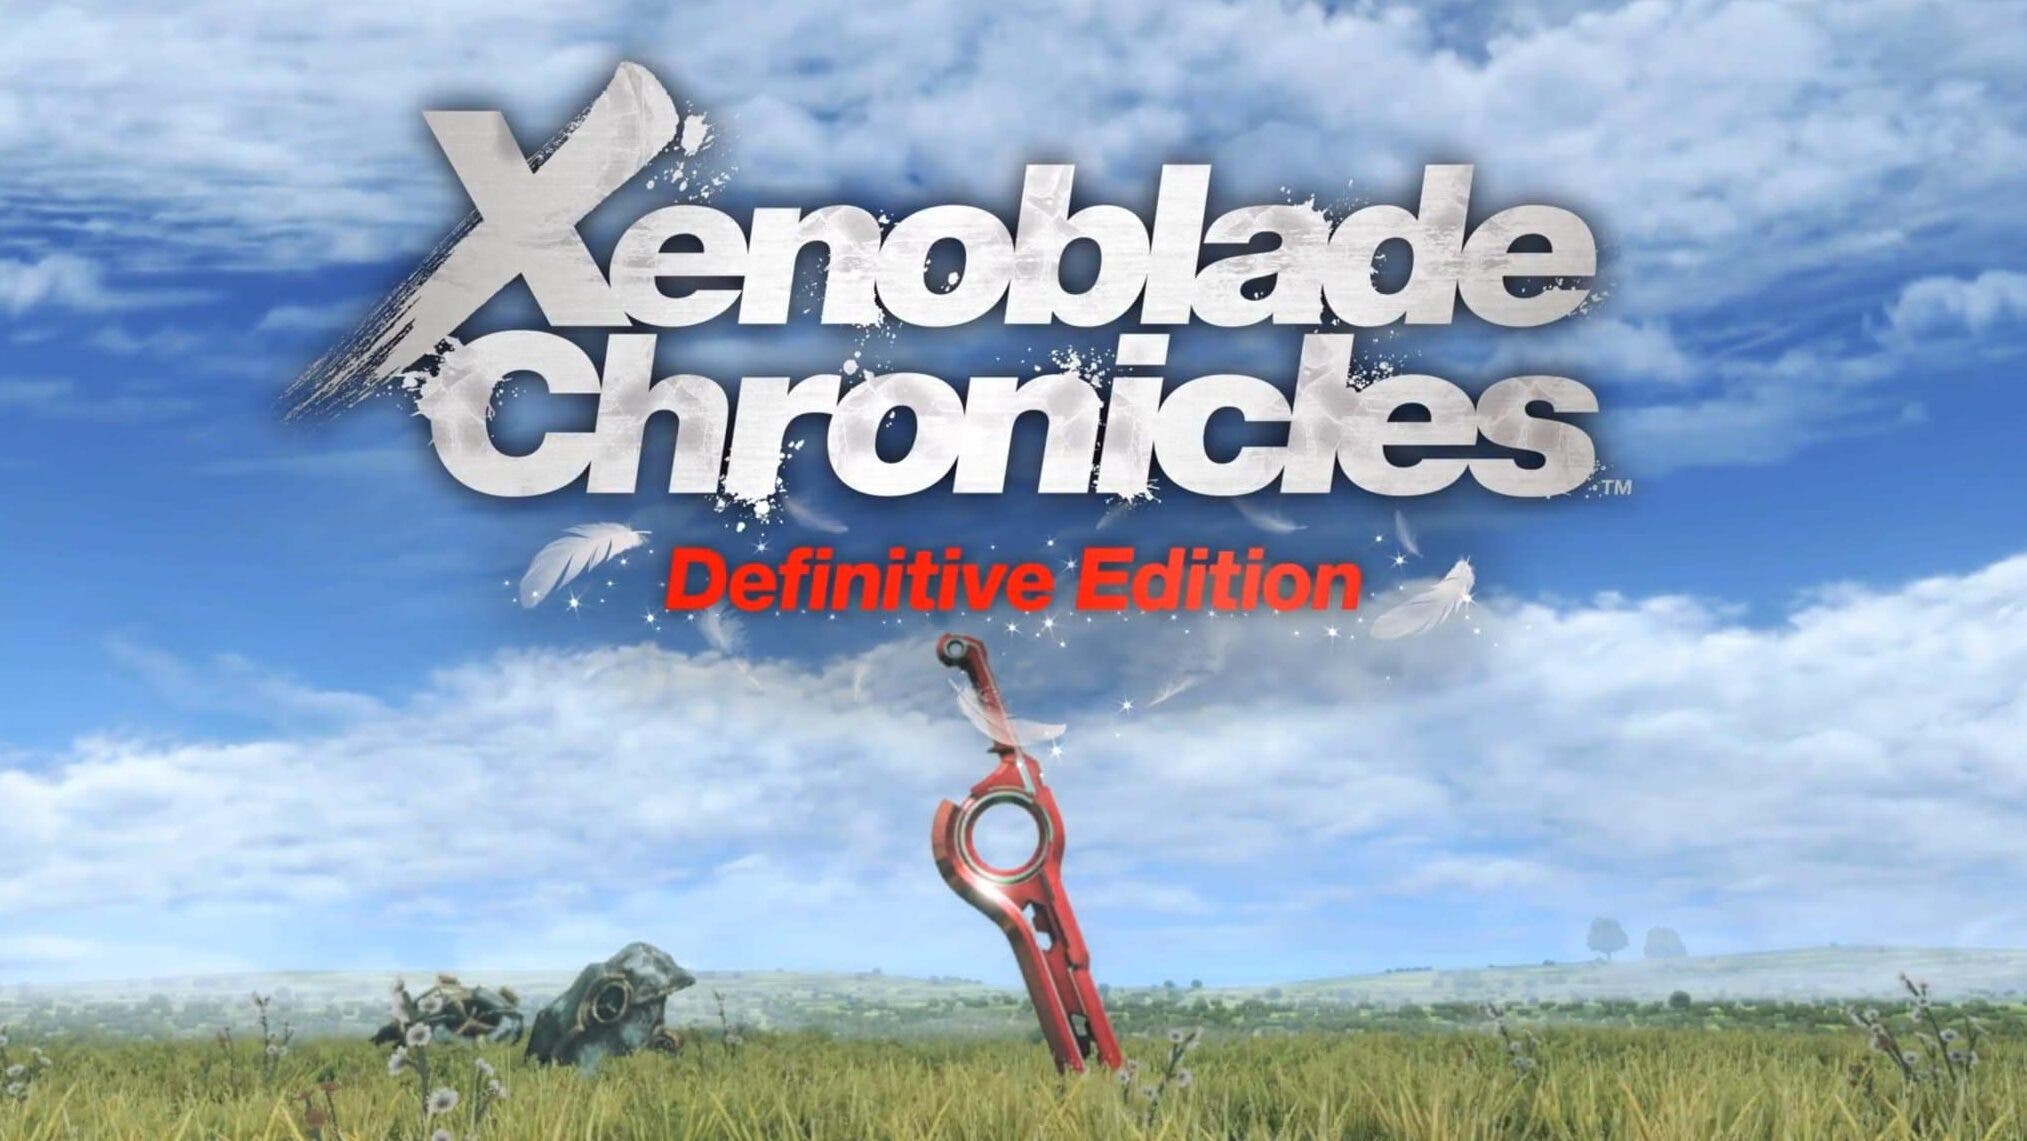 Xenoblade Chronicles: Definitive Edition parece incluir una zona desechada de la versión original